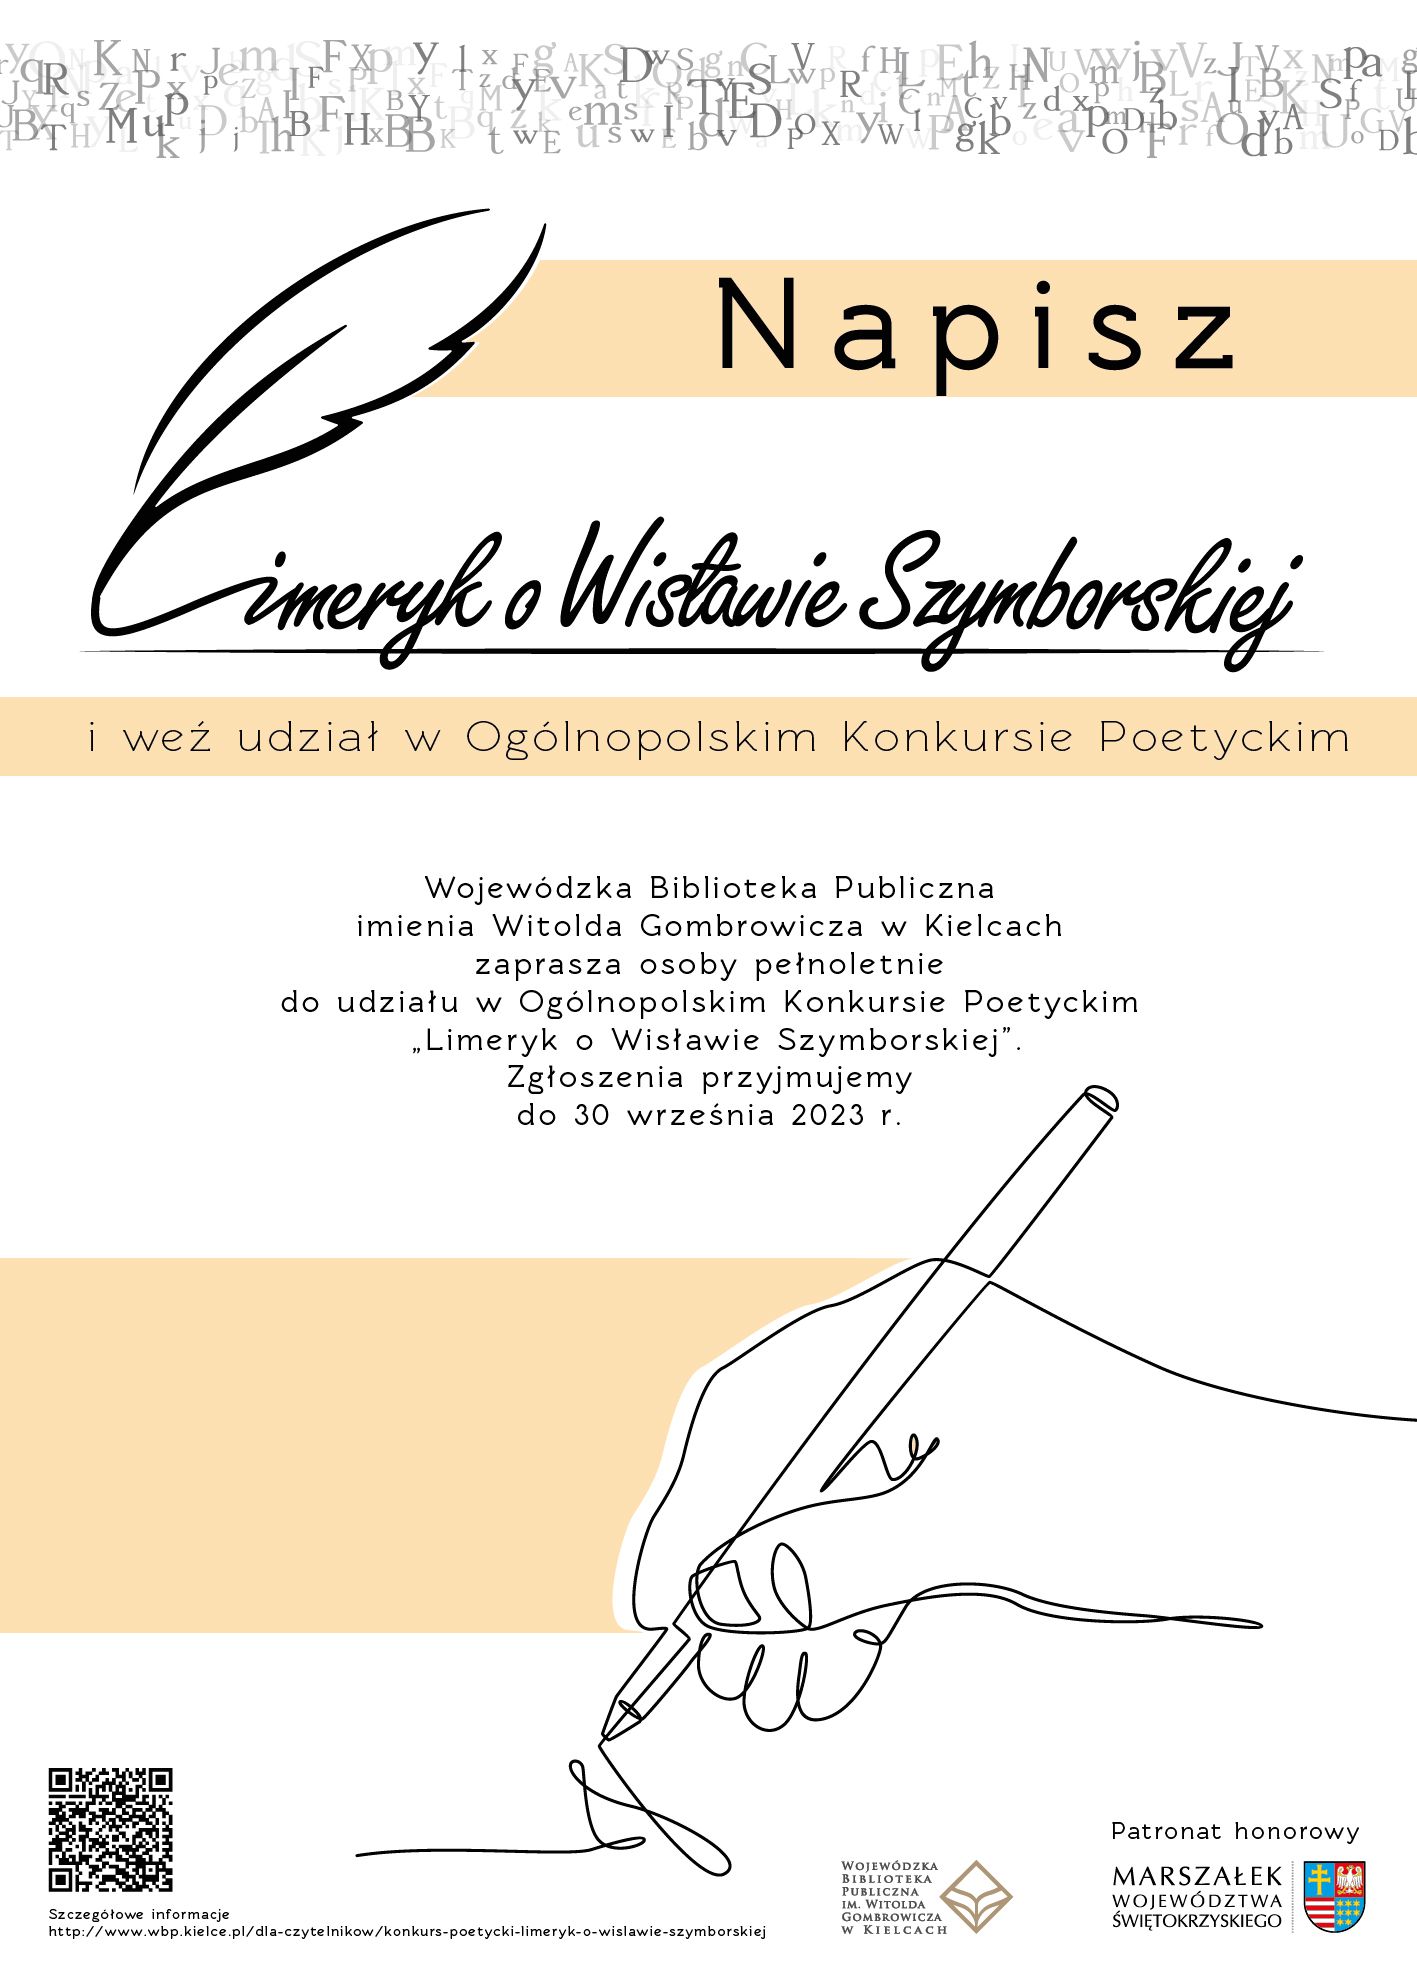 Plakat kolorowy, zaproszenie do wzięcia udziału w konkursie poetyckim organizowanym przez Wojewódzką Bibliotekę Publiczną w Kielcach 